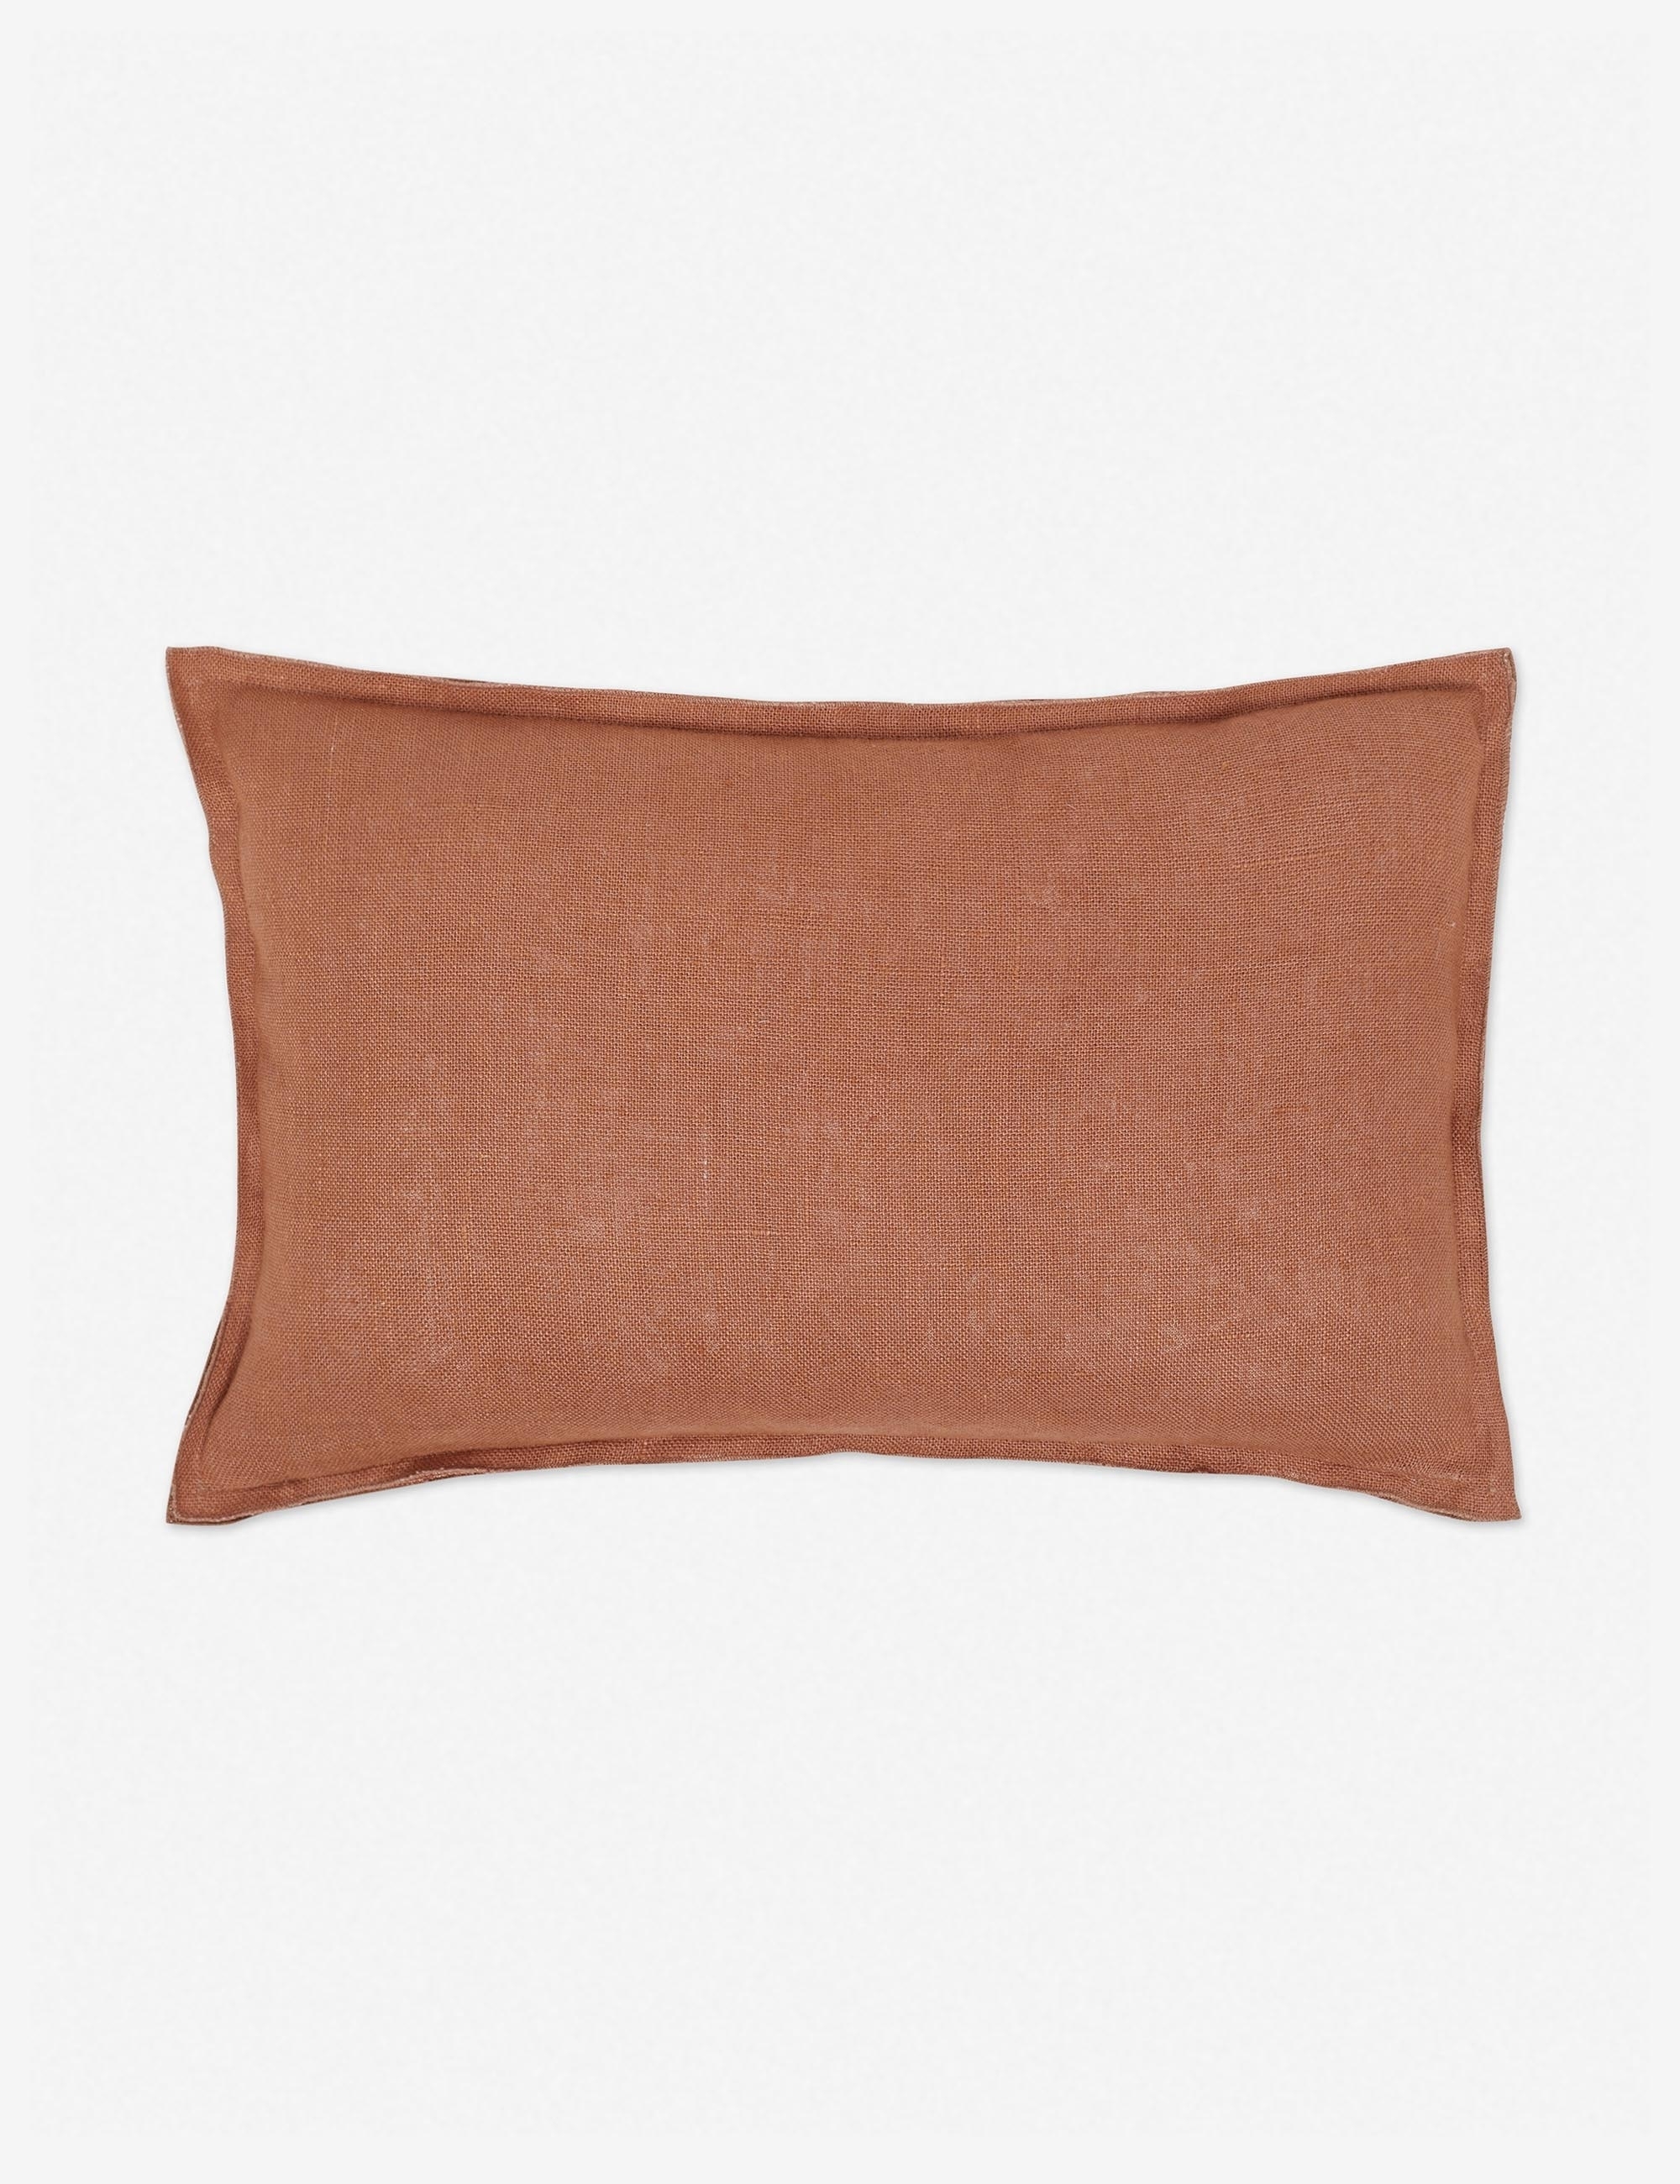 Arlo Linen Lumbar Pillow, Rust - Image 2